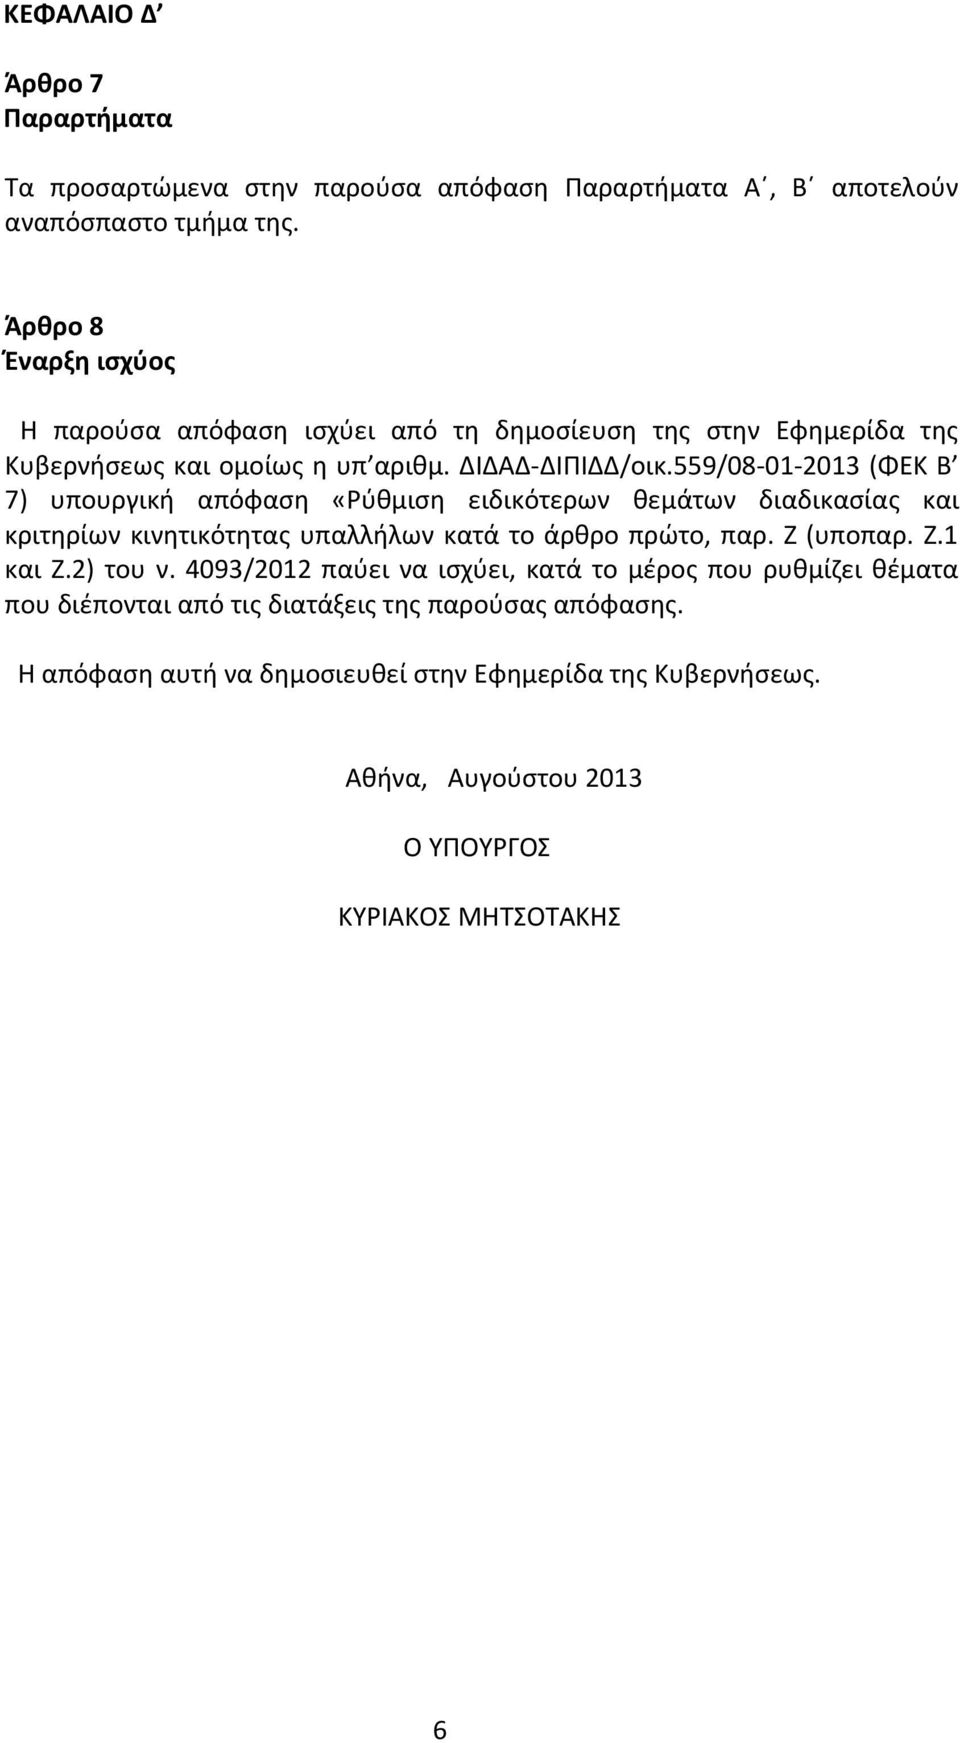 559/08-01-2013 (ΦΕΚ Β 7) υπουργική απόφαση «Ρύθμιση ειδικότερων θεμάτων διαδικασίας και κριτηρίων κινητικότητας υπαλλήλων κατά το άρθρο πρώτο, παρ. Ζ (υποπαρ. Ζ.1 και Ζ.